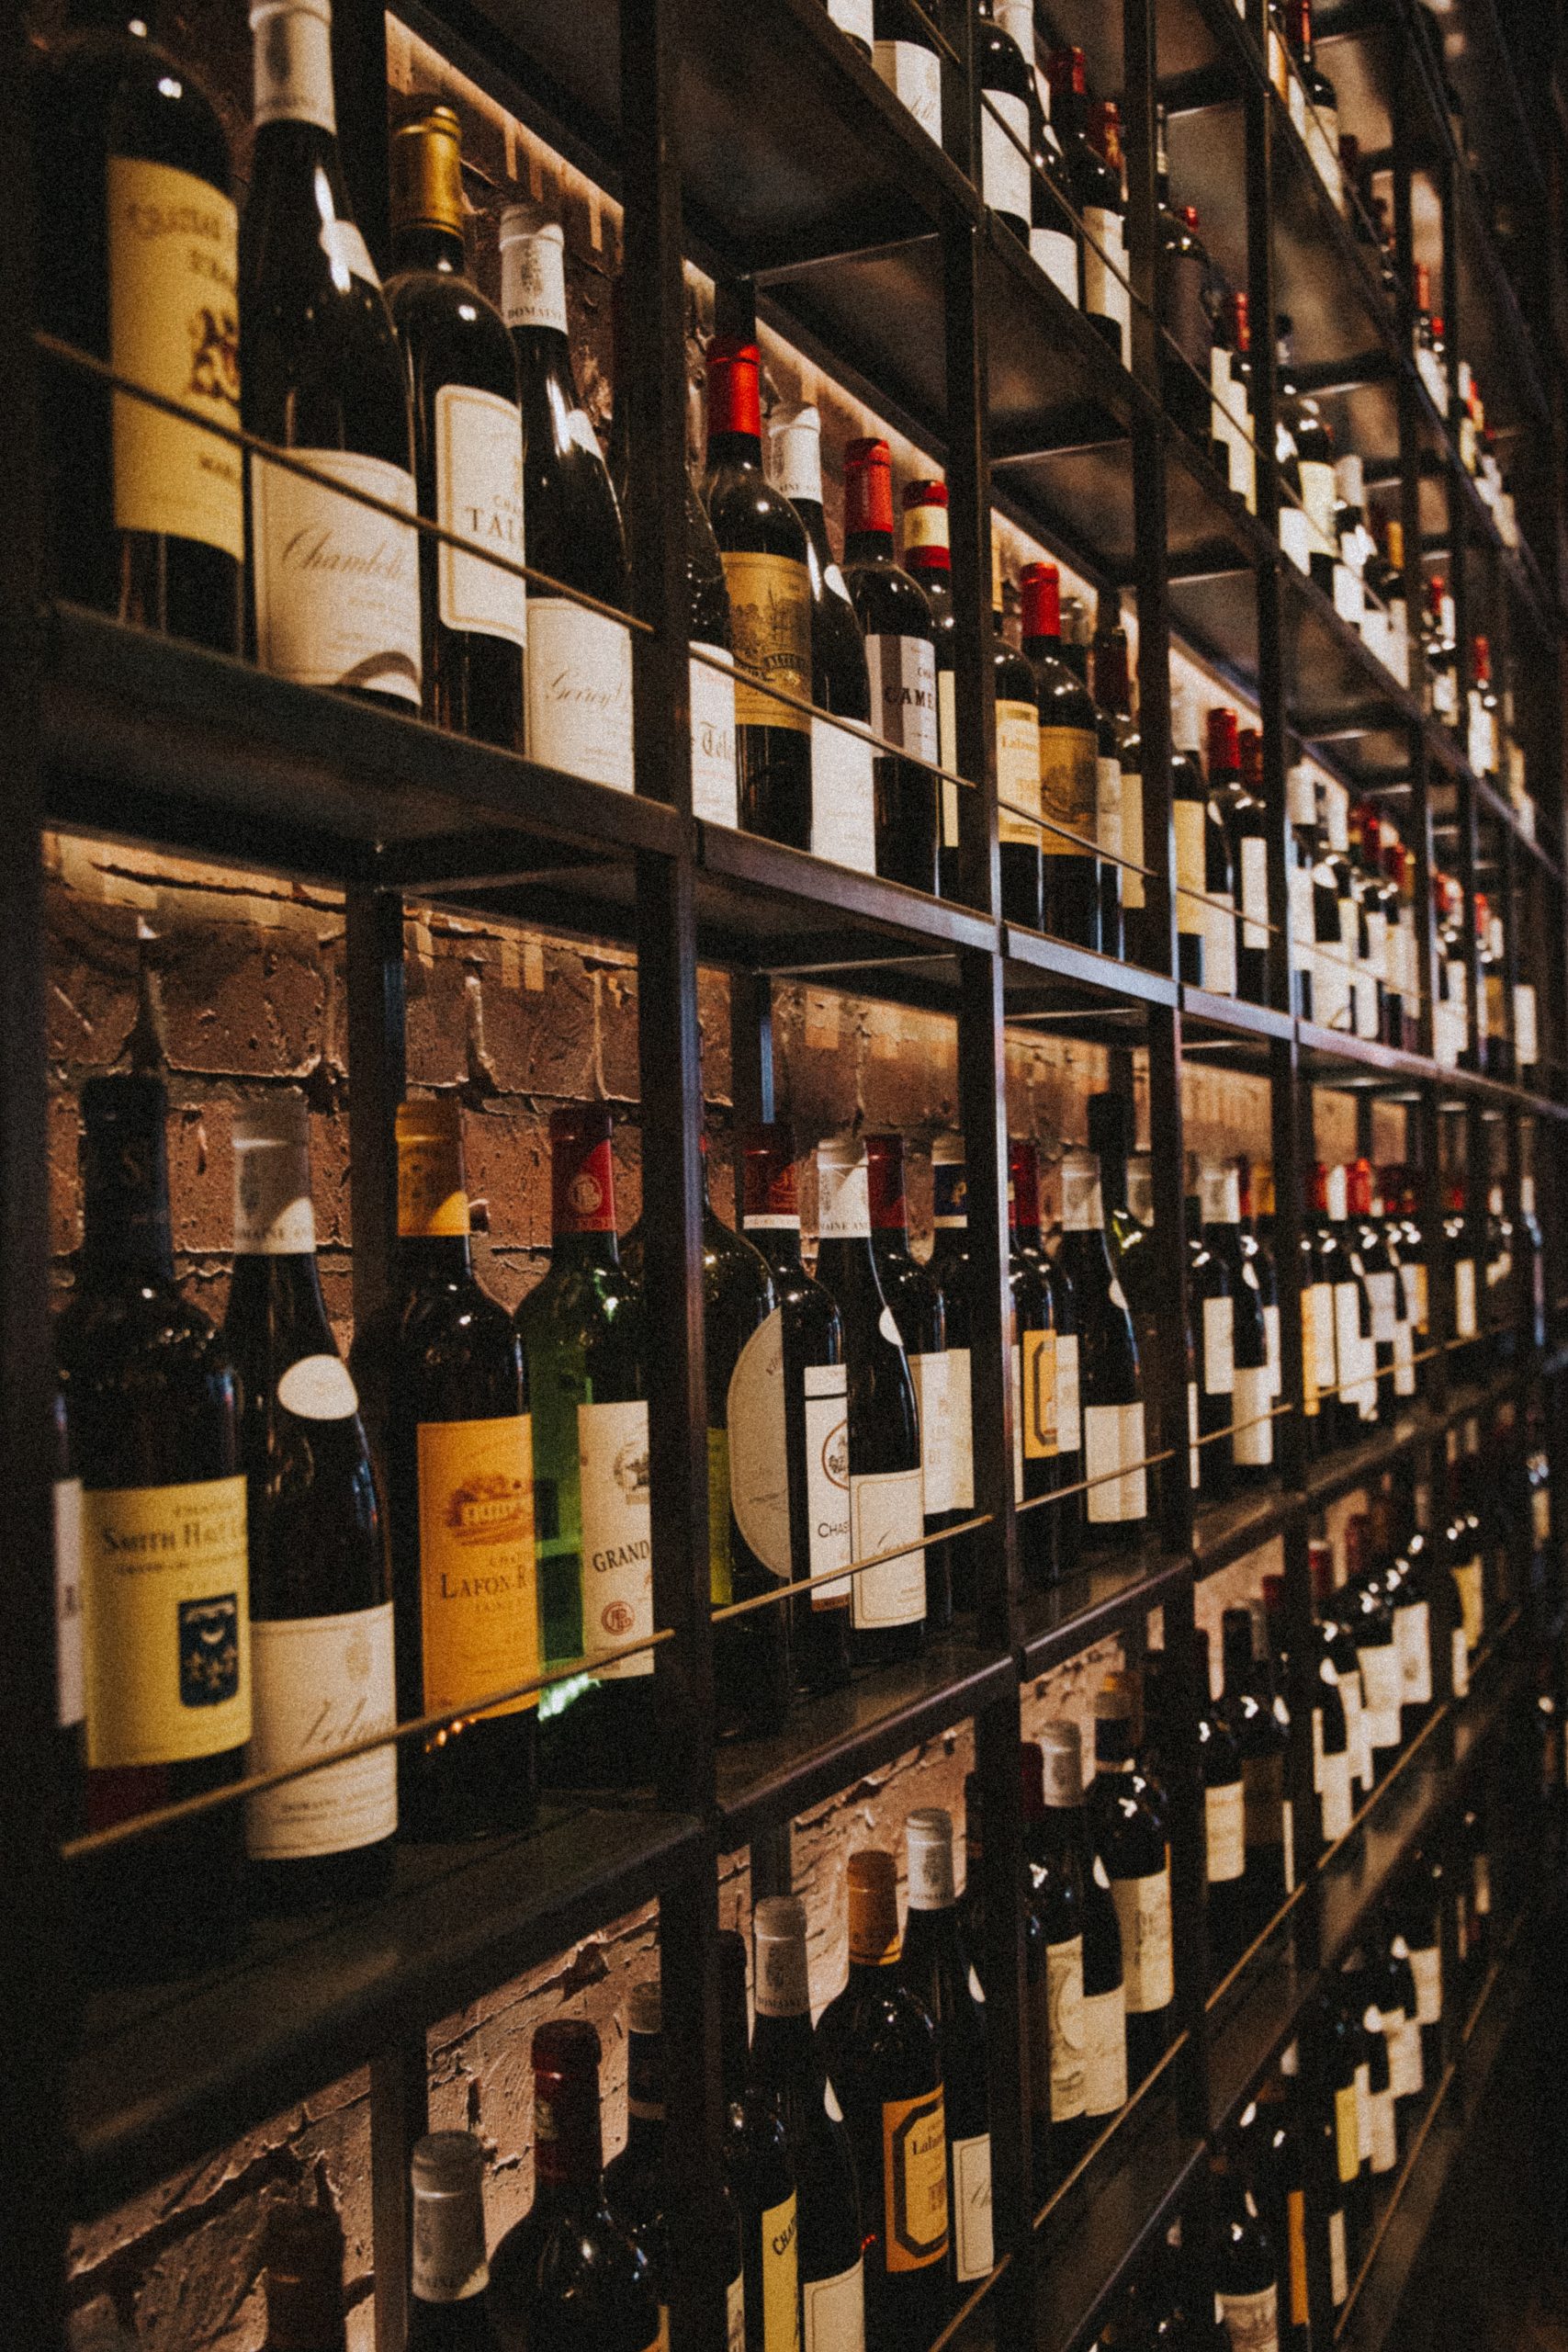 Archivní vína v regálech